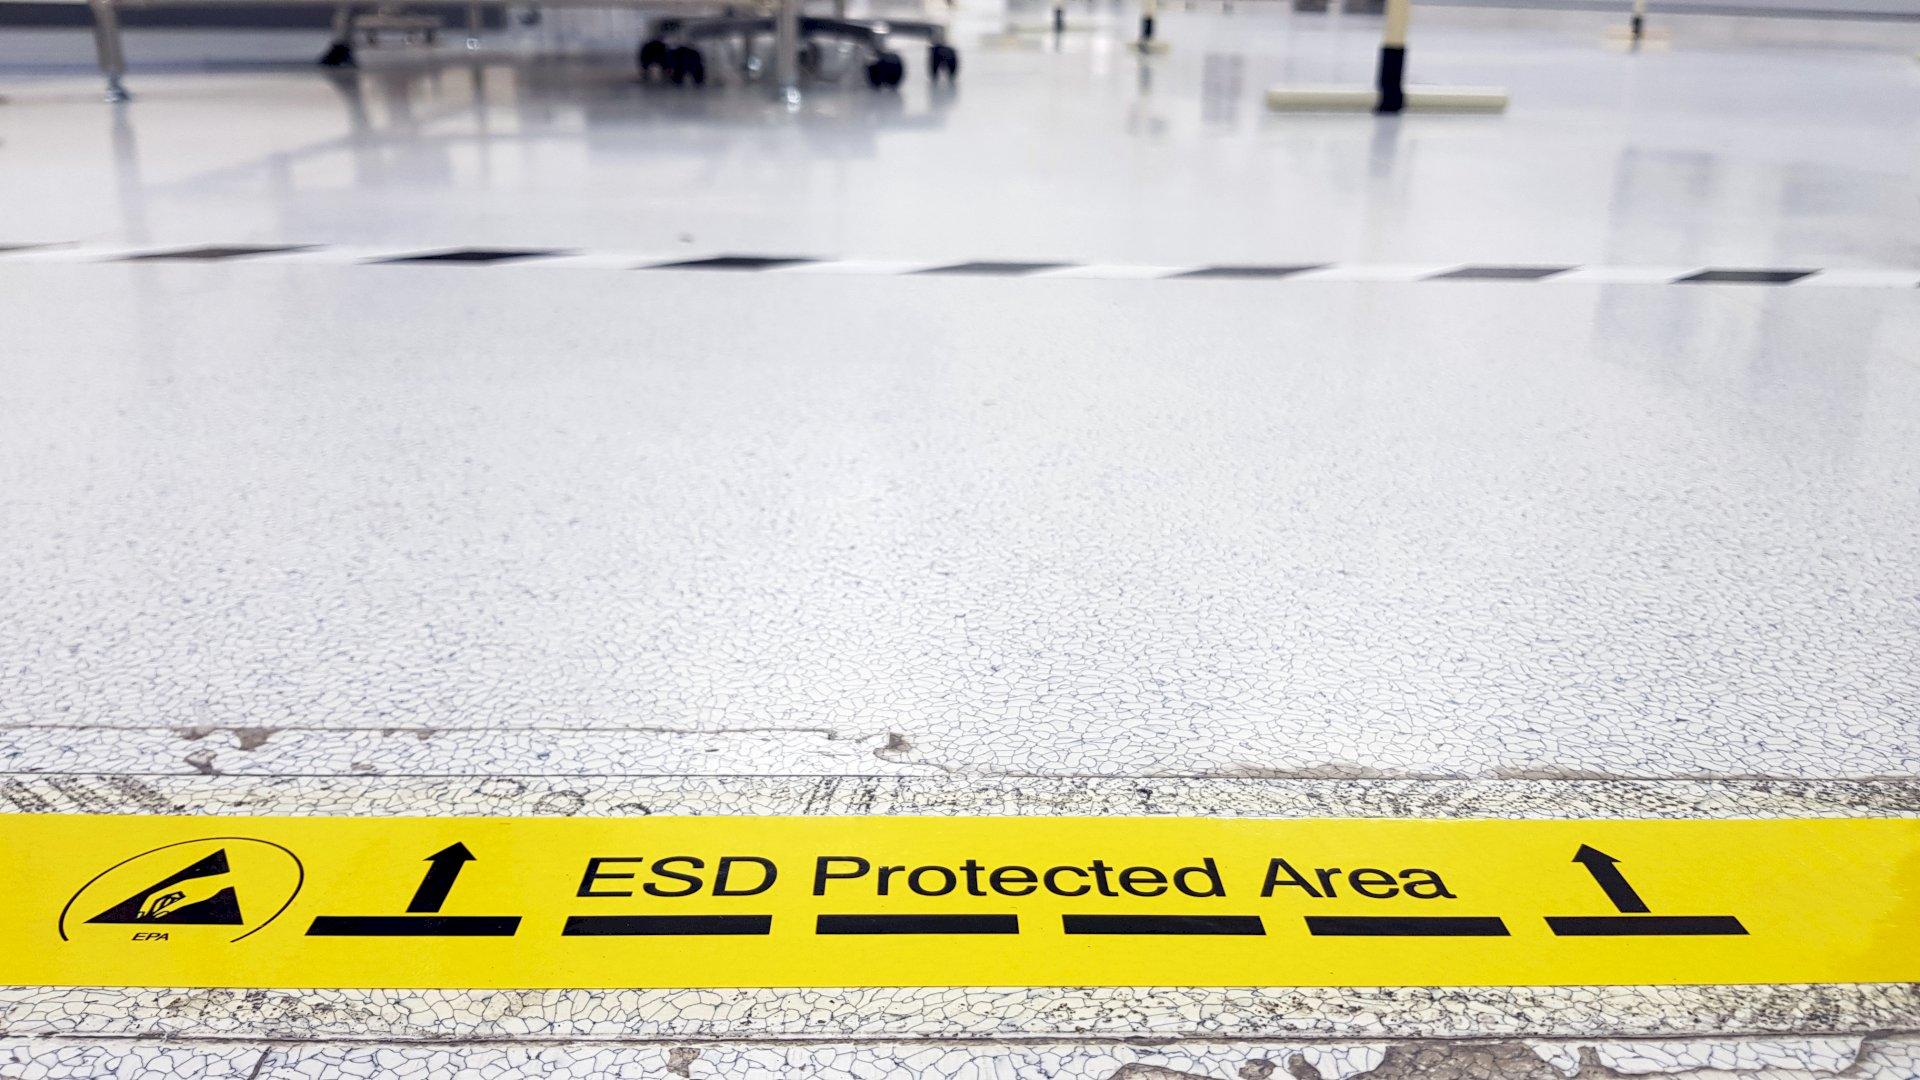 Wat mag er in de EPA (ESD Protected area)?